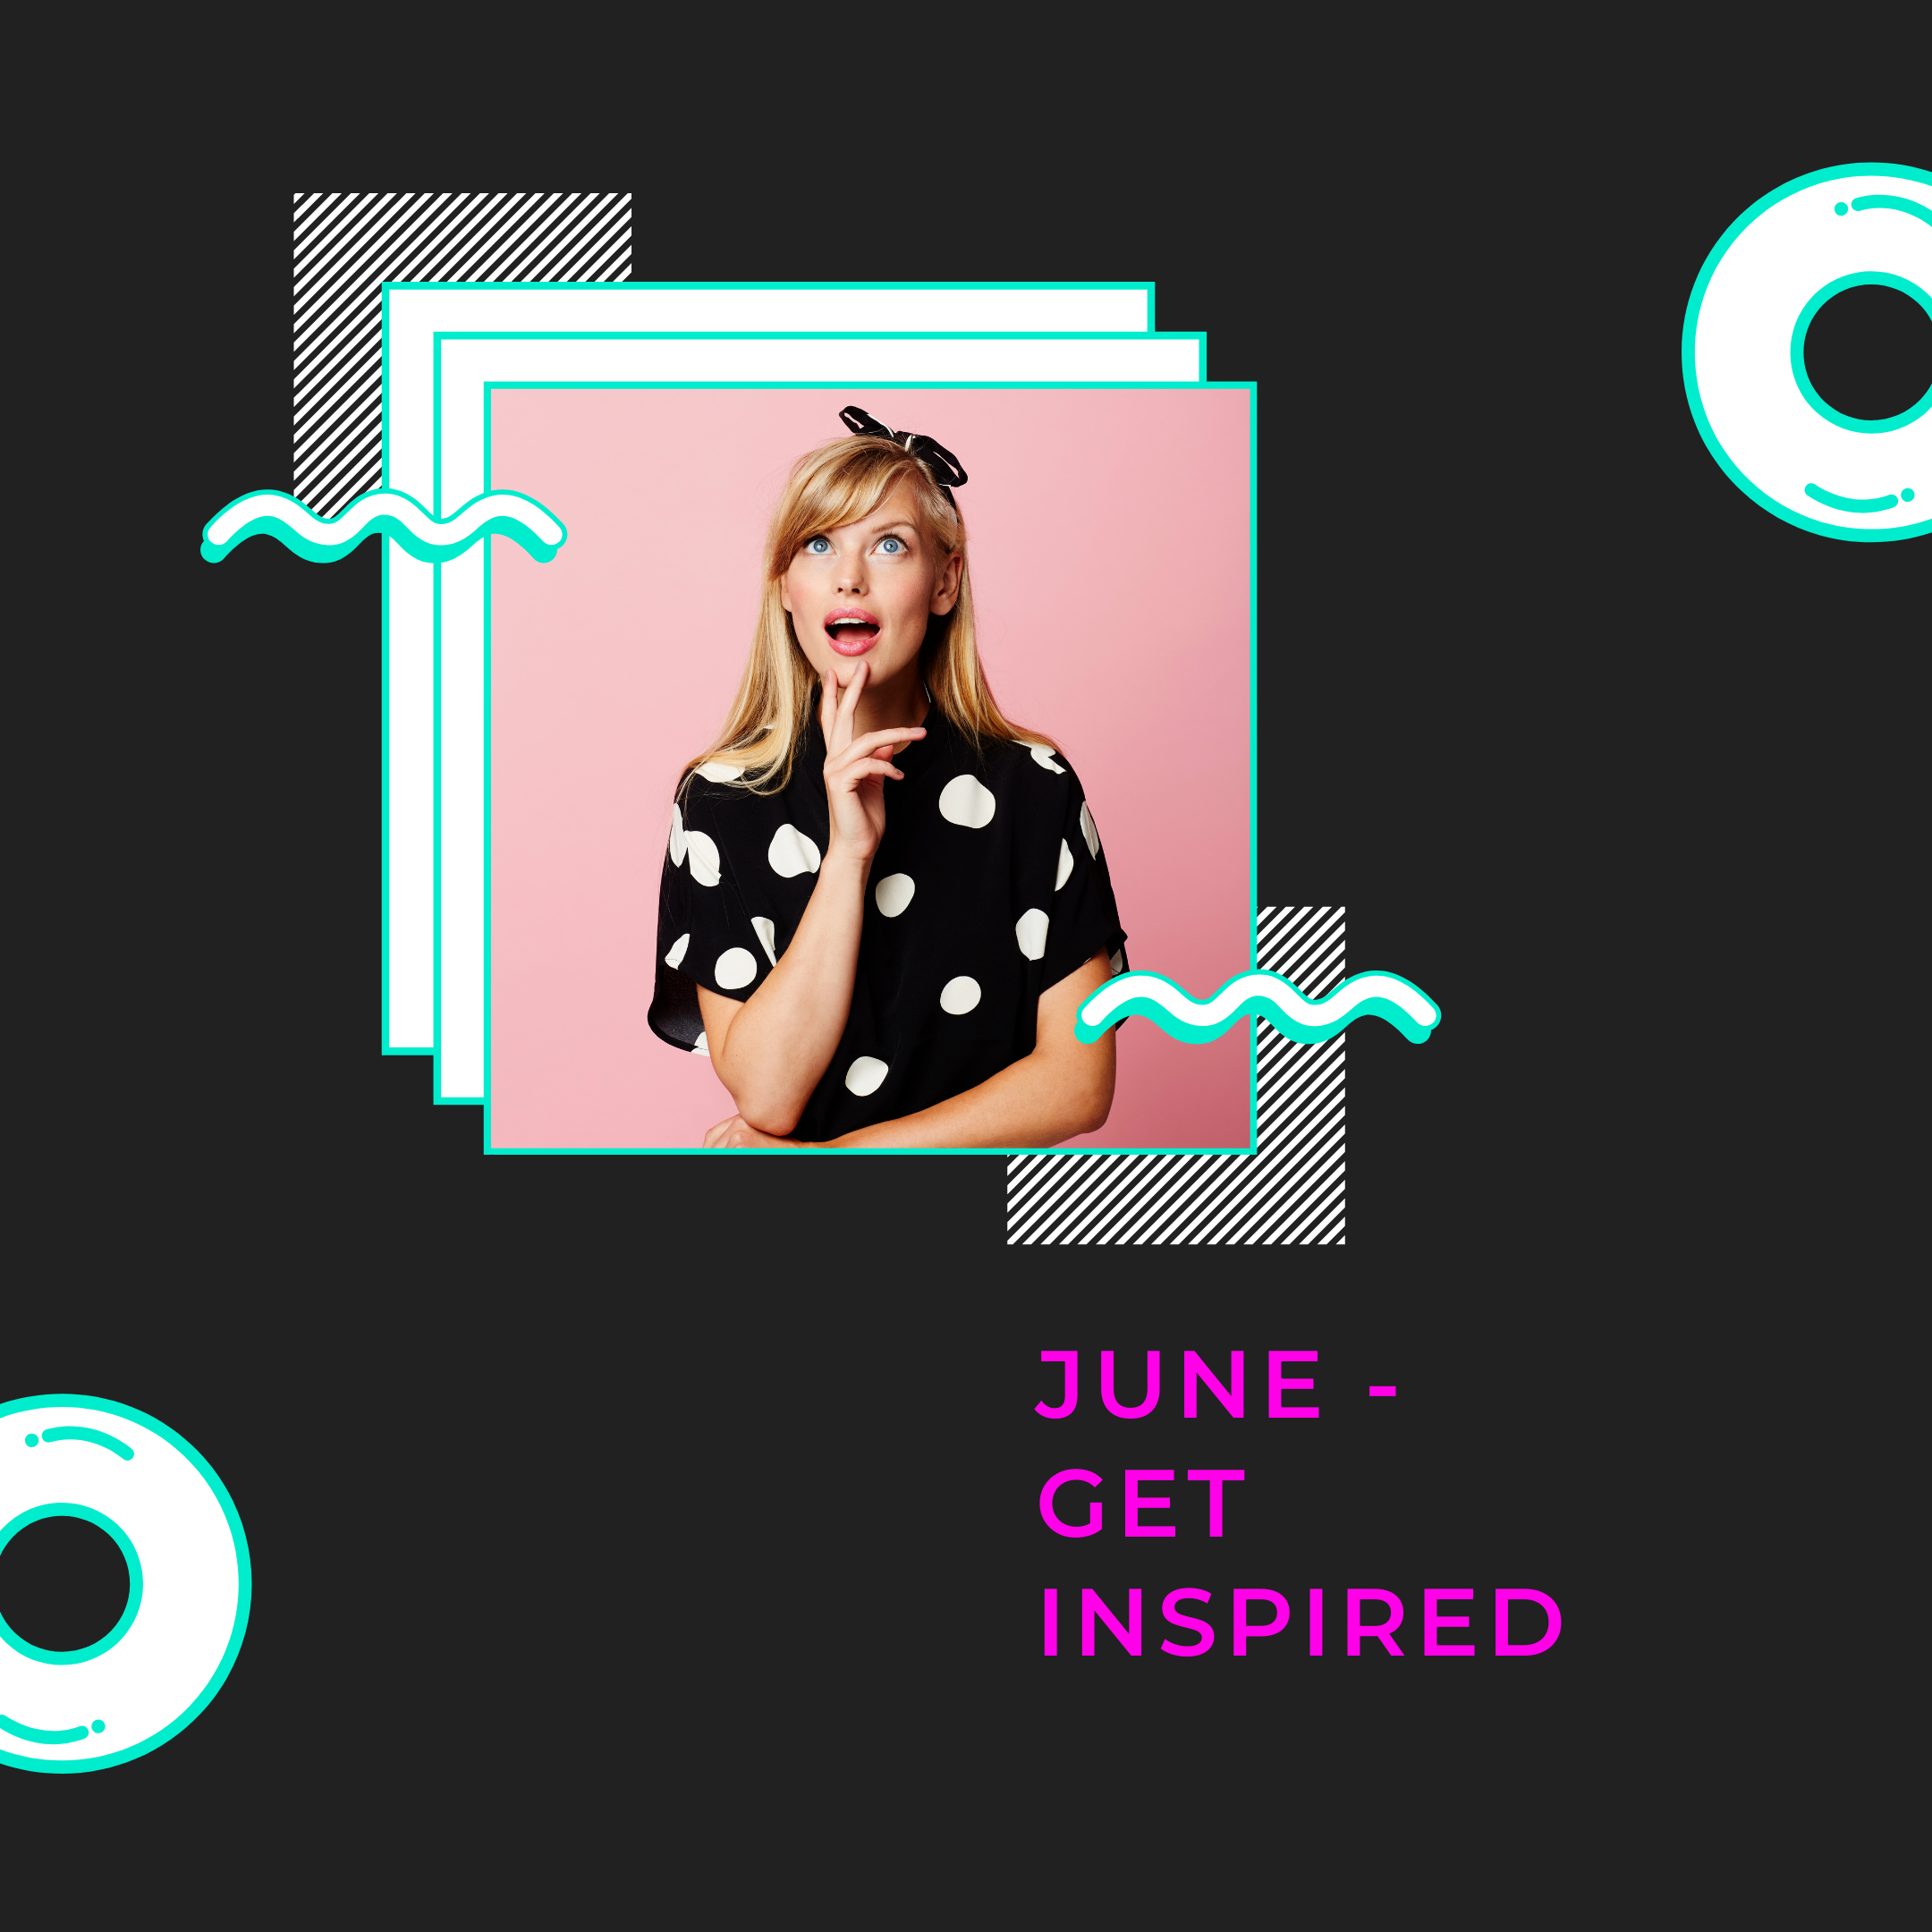 Get inspired in June